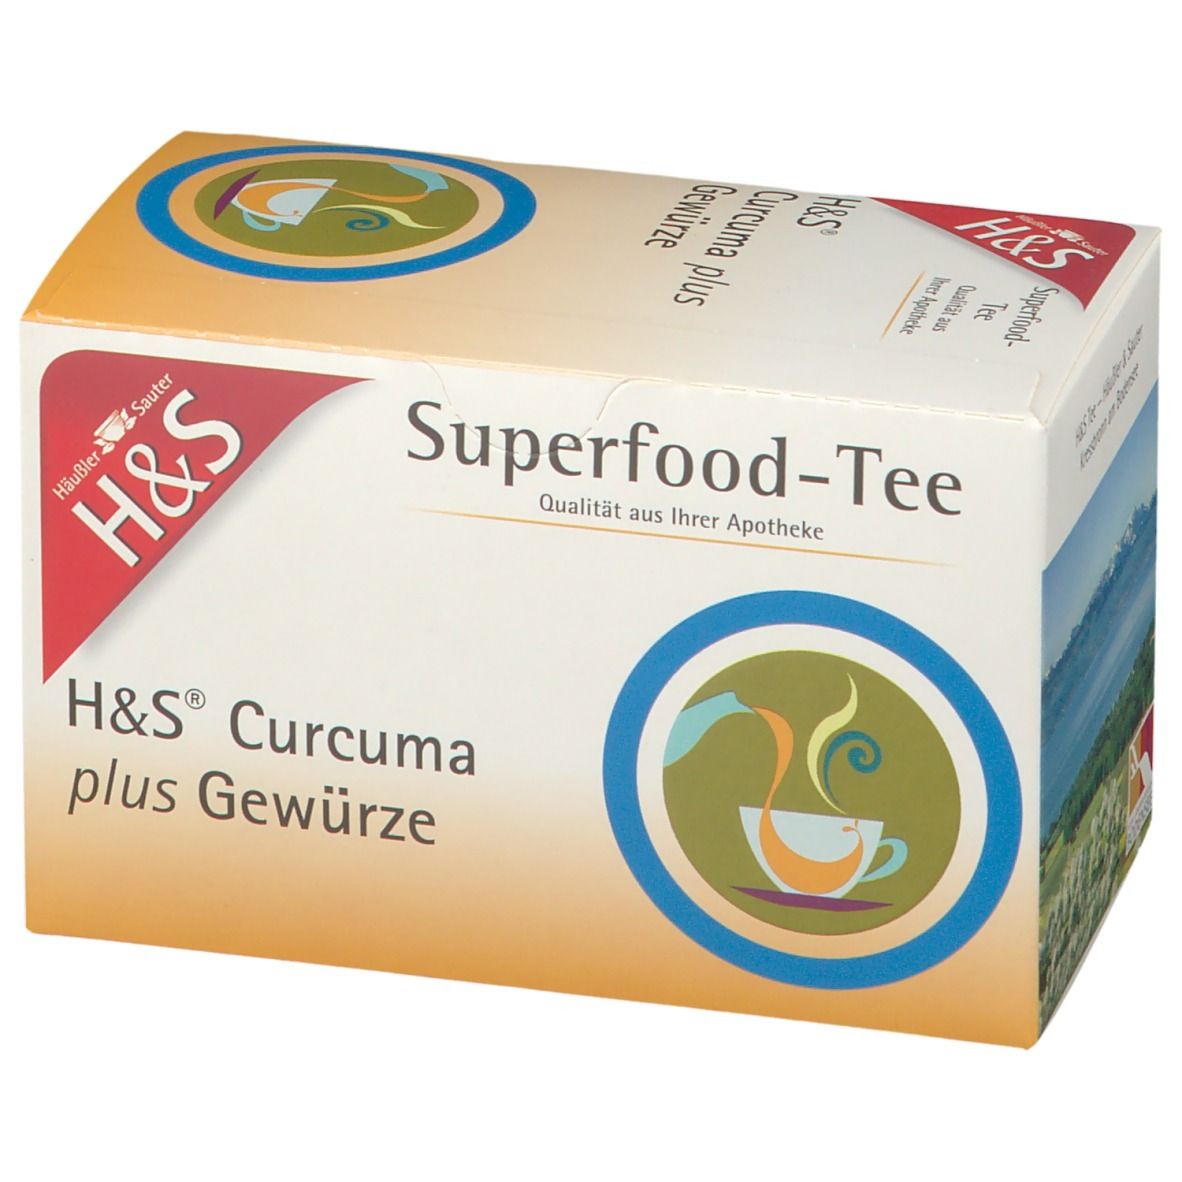 H&S Superfood Tee Curcuma plus Gewürze